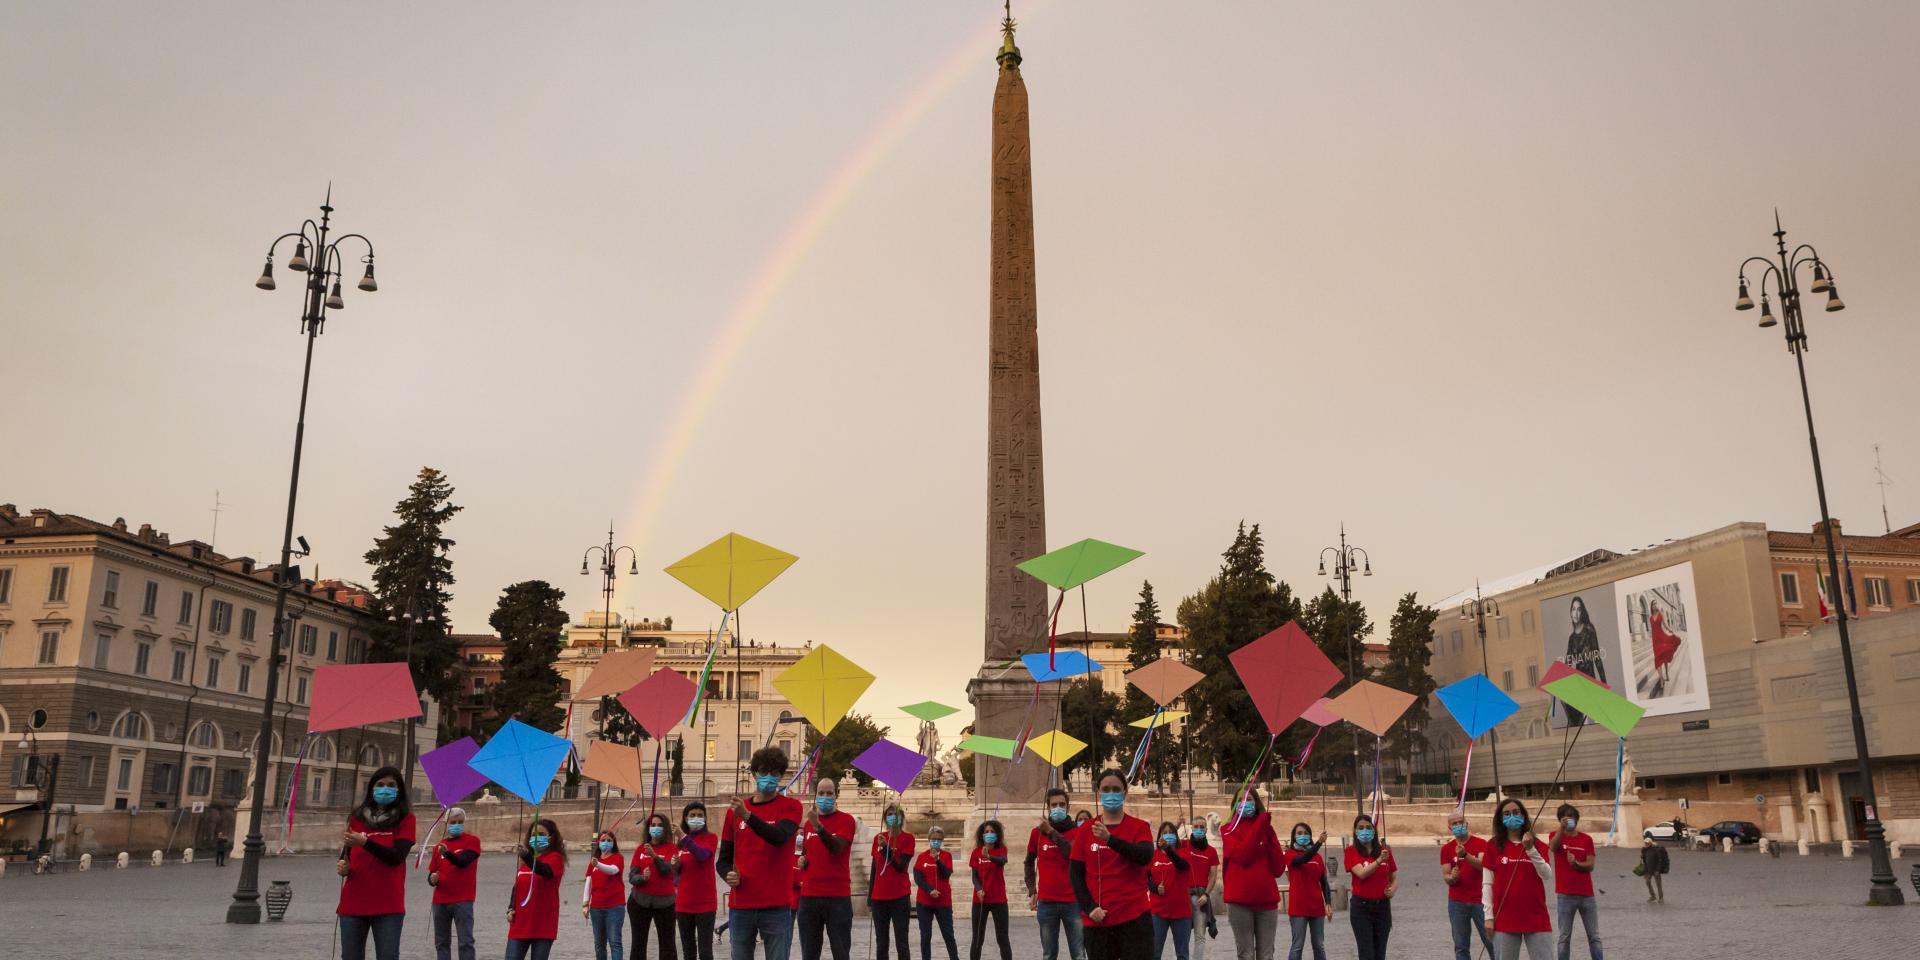 Lo staff di Save the Children, ciascuno con in mano un aquilone volteggiante, radunati in piazza a Roma per chiedere aiuti umanitari e protezione per i bambini in Afghanistan